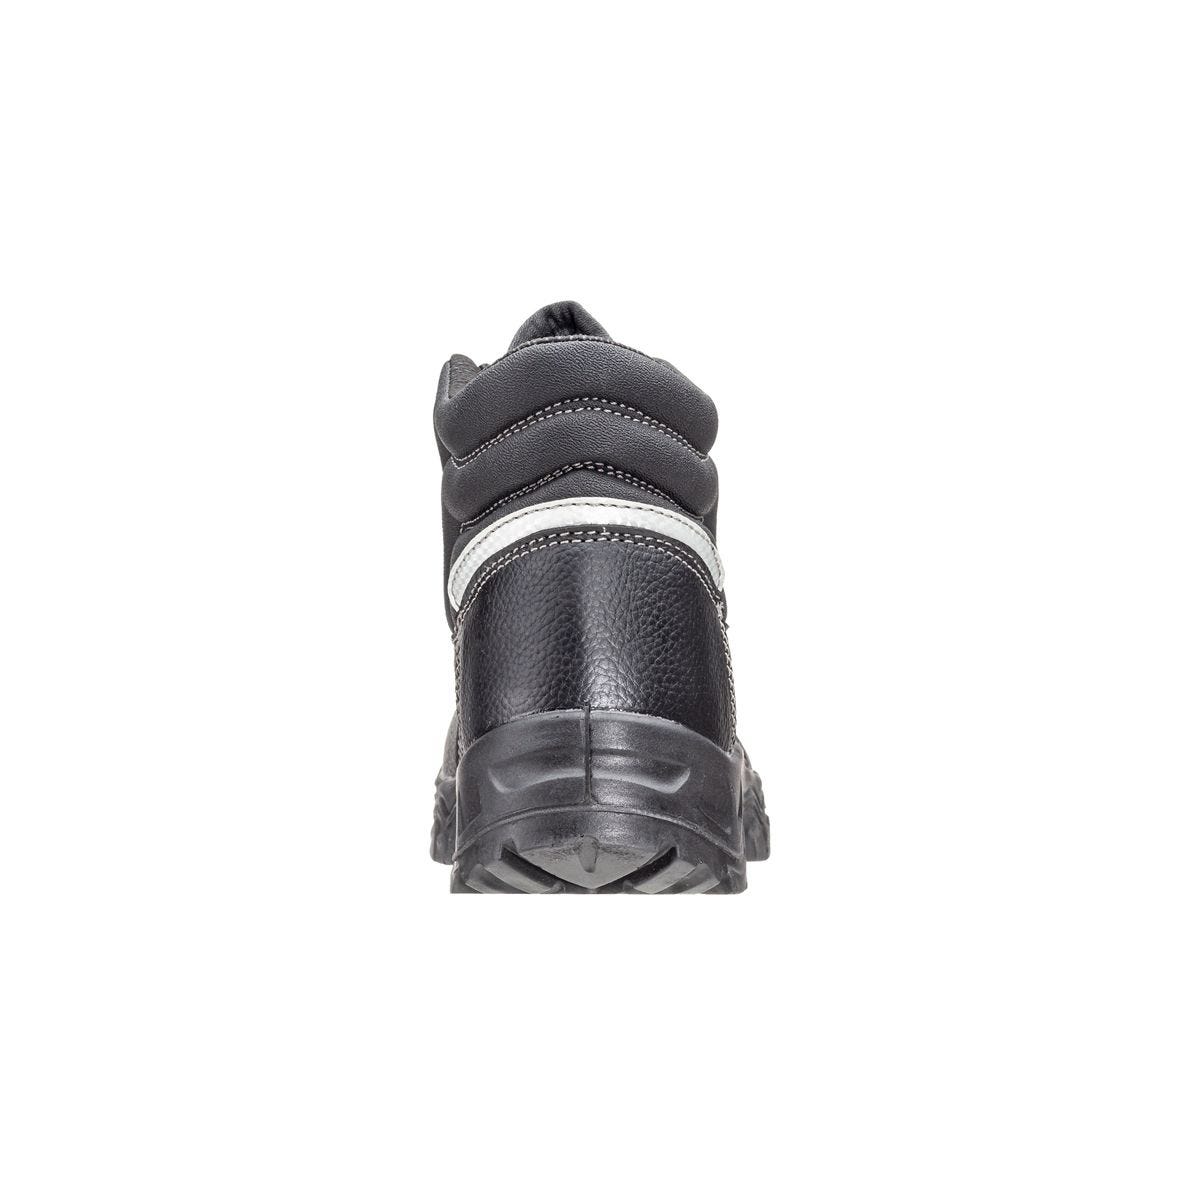 Chaussures de sécurité hautes Azurite II S3 ESD noir - Coverguard - Taille 40 4